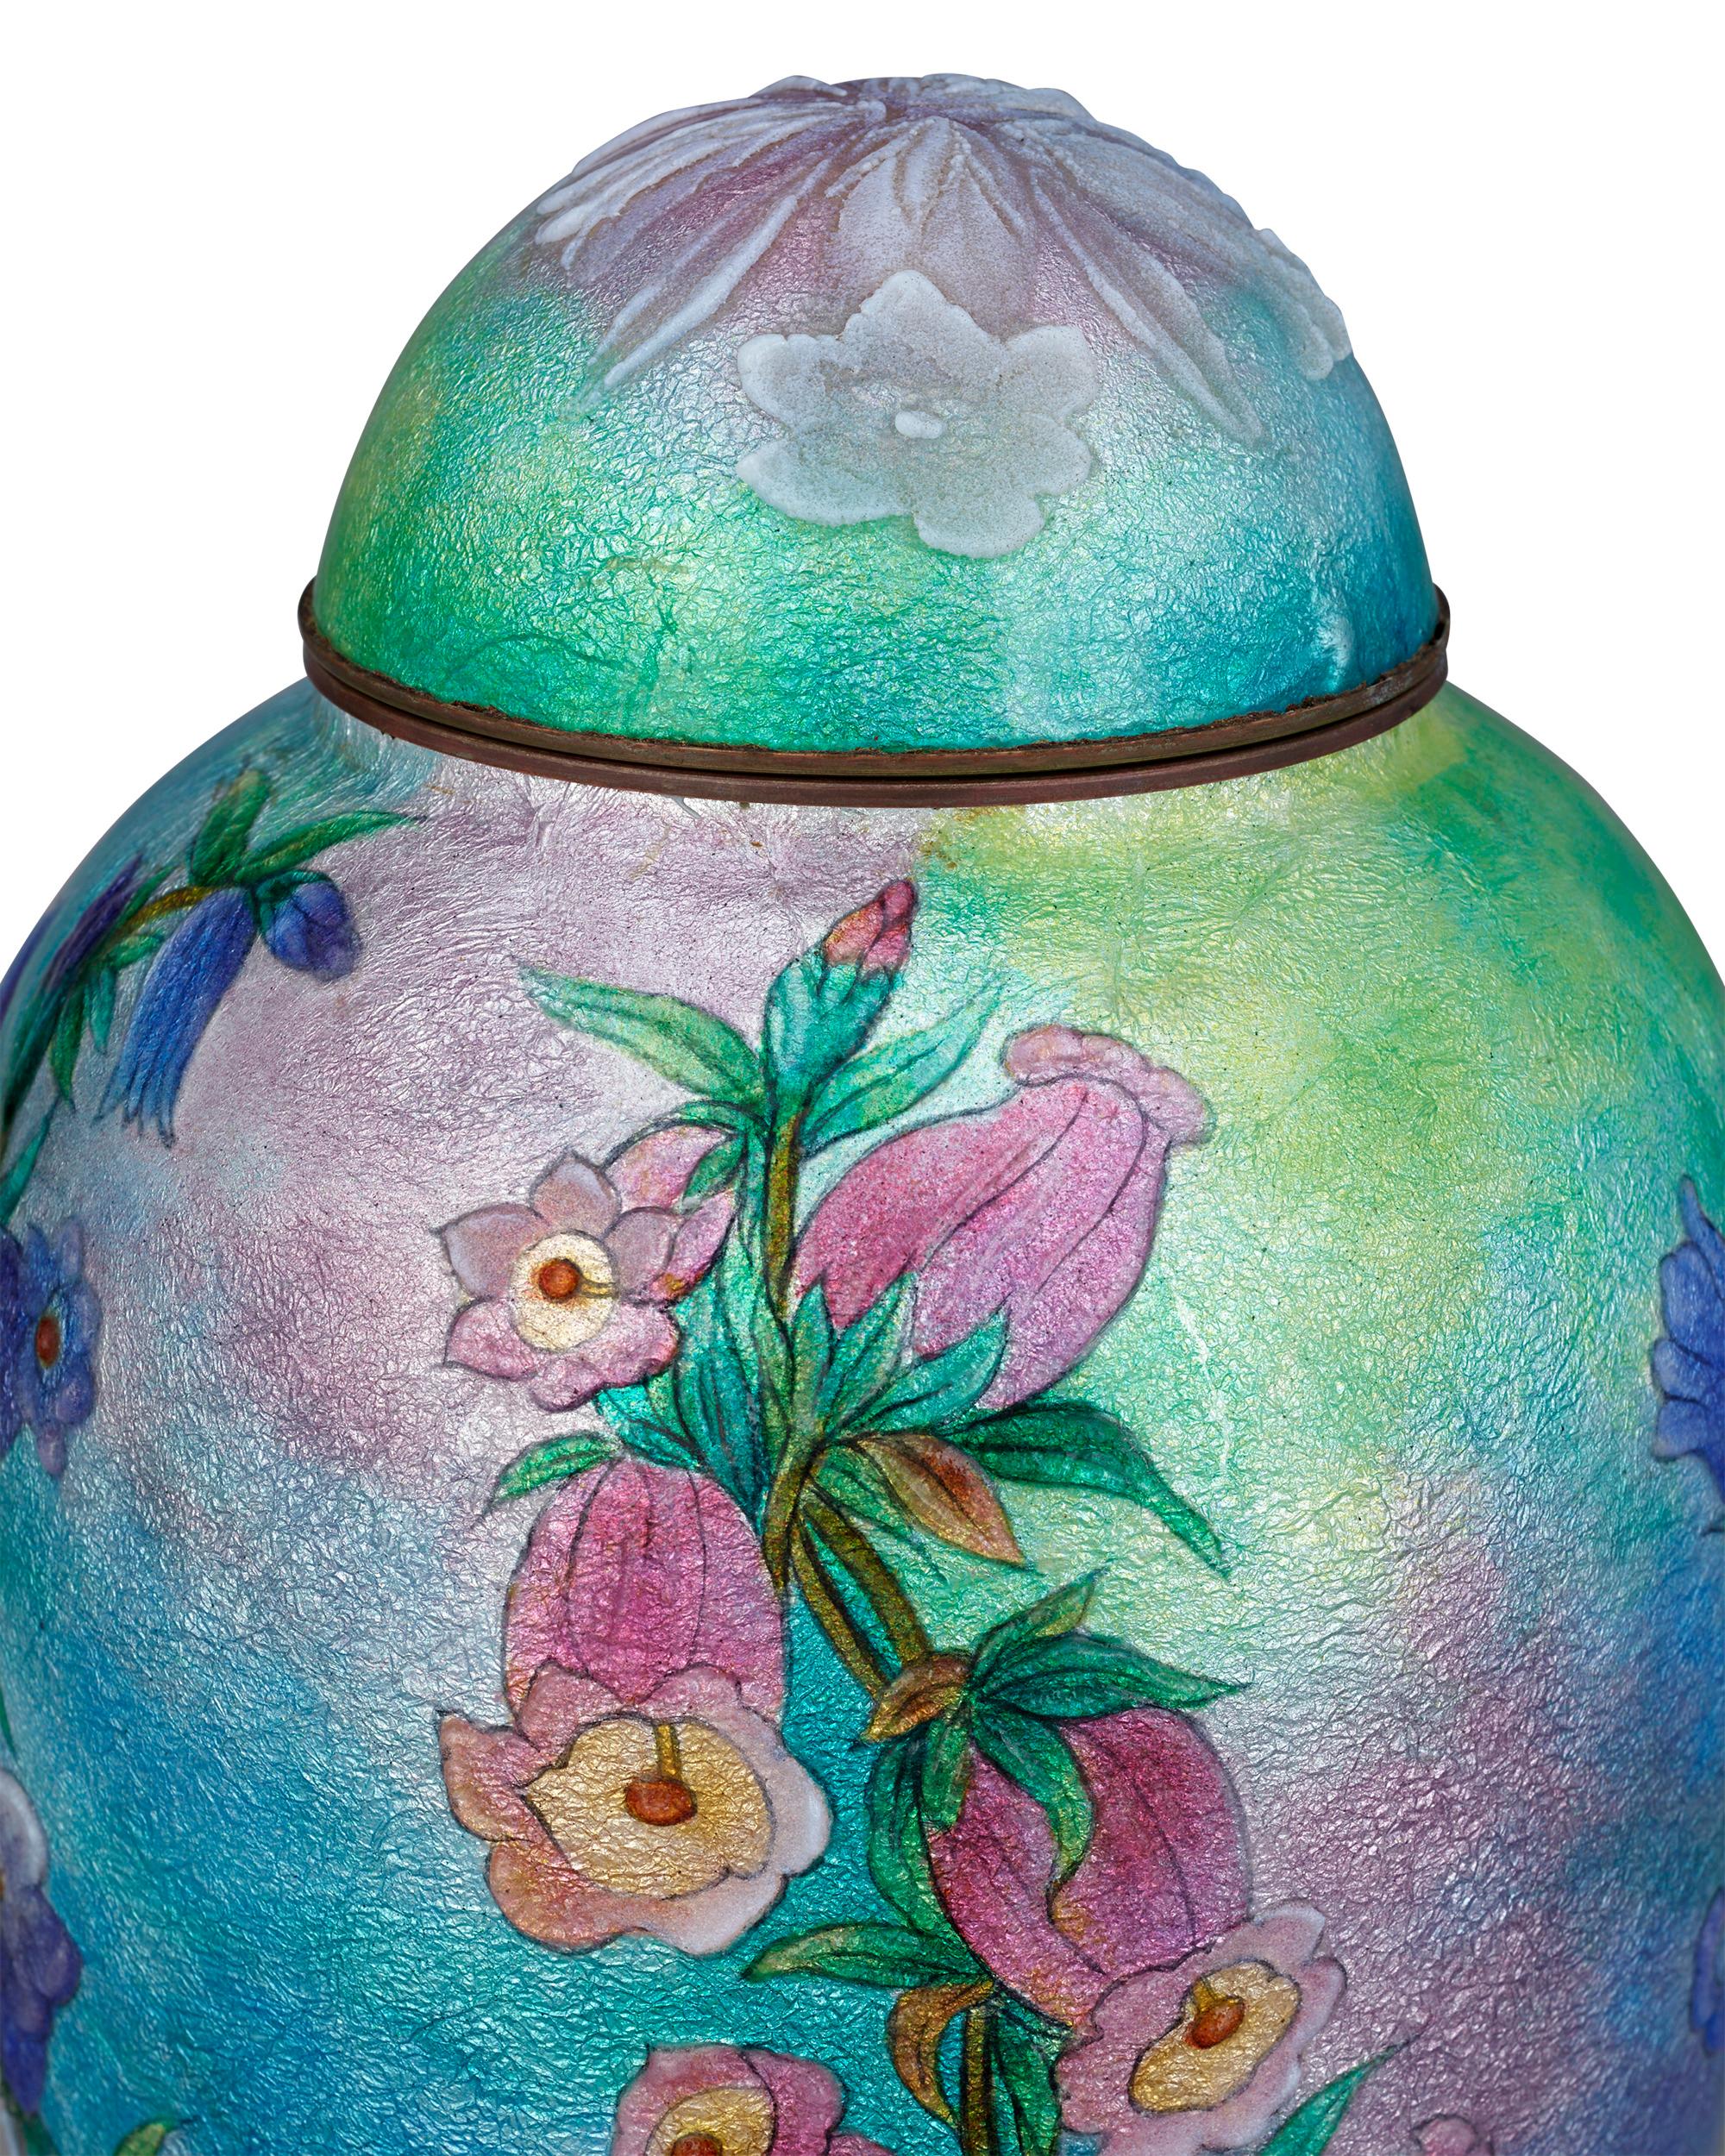 De délicates fleurs roses semblent jaillir de ce vase bleu émaillé de Limoges de Camille Fauré, décoré de vibrants motifs de mufliers. Des couches et des couches d'émail aux teintes vives et aux lignes gravées de manière experte ont été appliquées